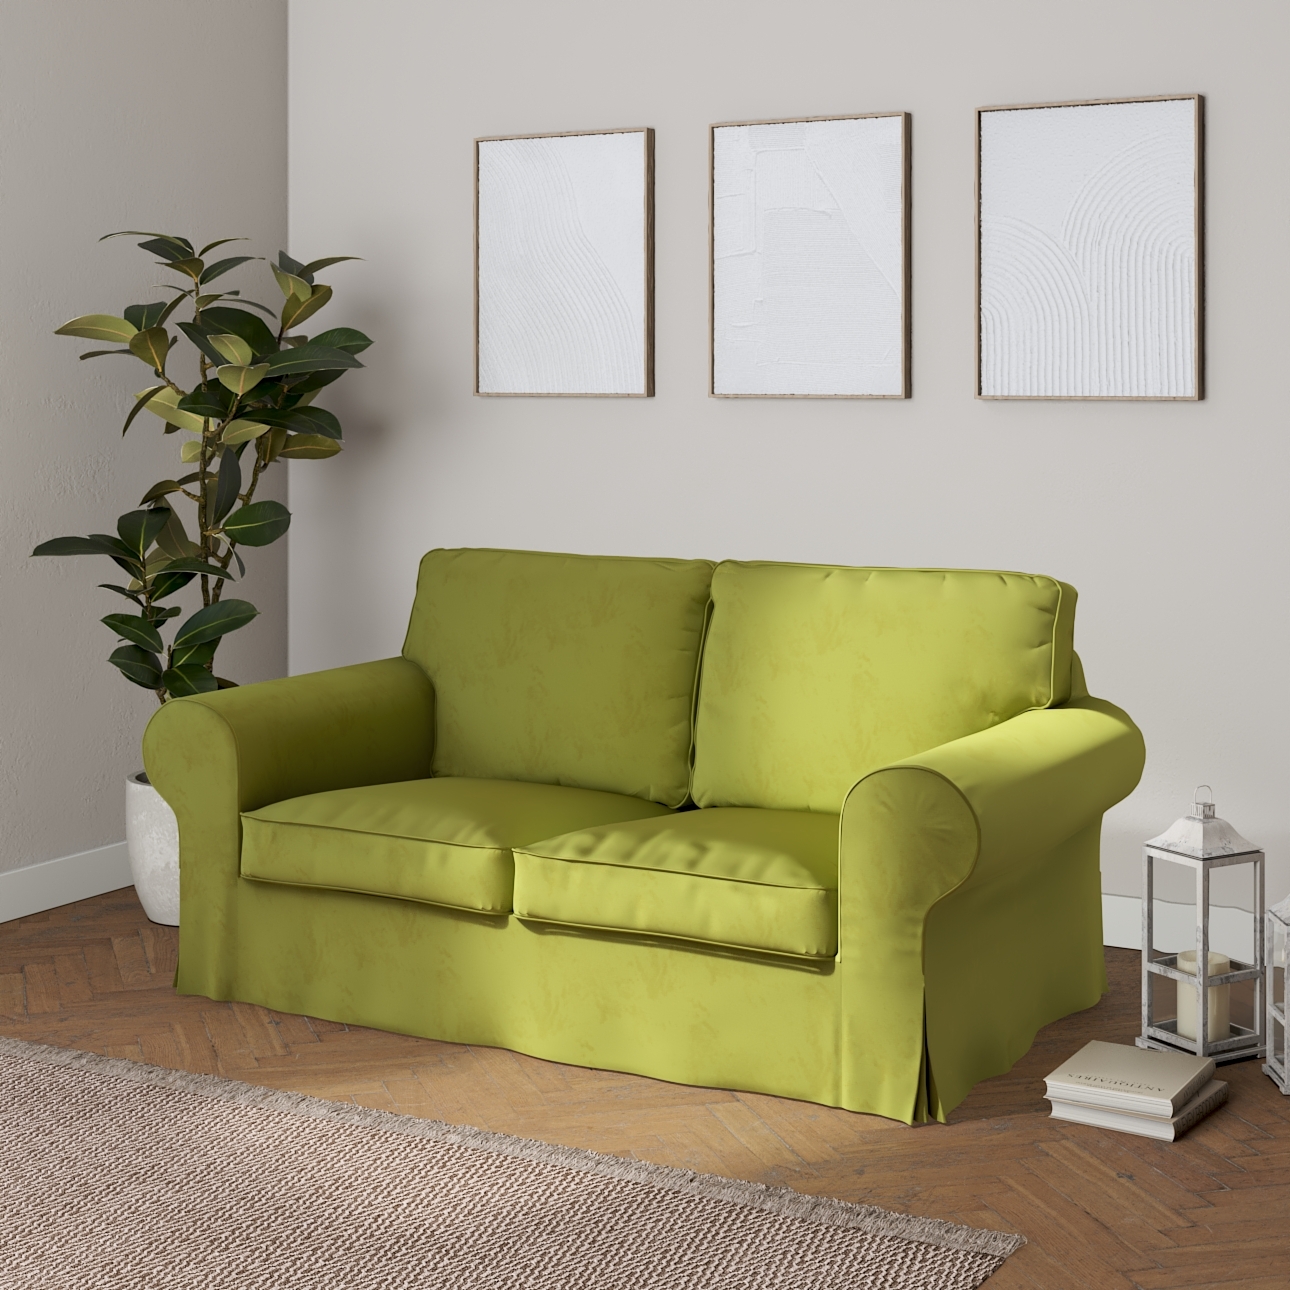 Bezug für Ektorp 2-Sitzer Schlafsofa NEUES Modell, limone, Sofabezug für  E günstig online kaufen